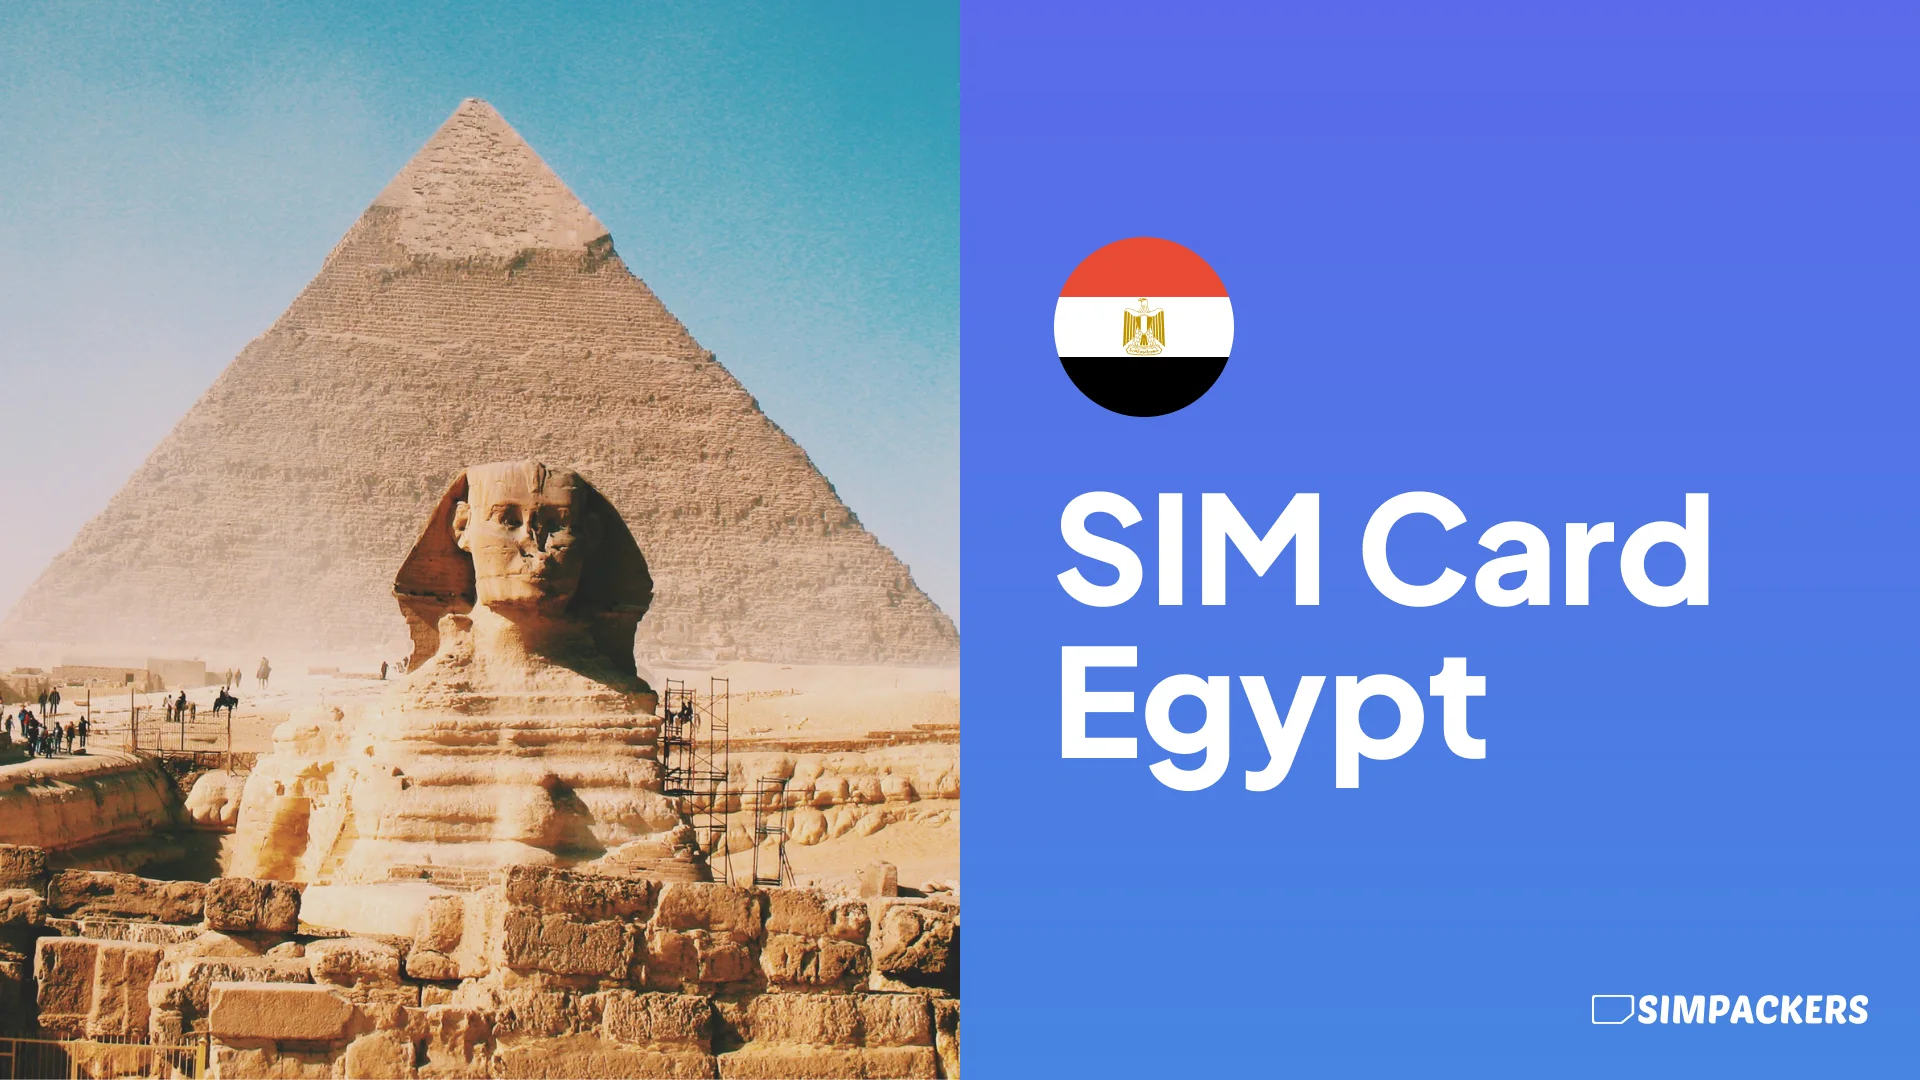 EN/FEATURED_IMAGES/sim-card-egypt.webp